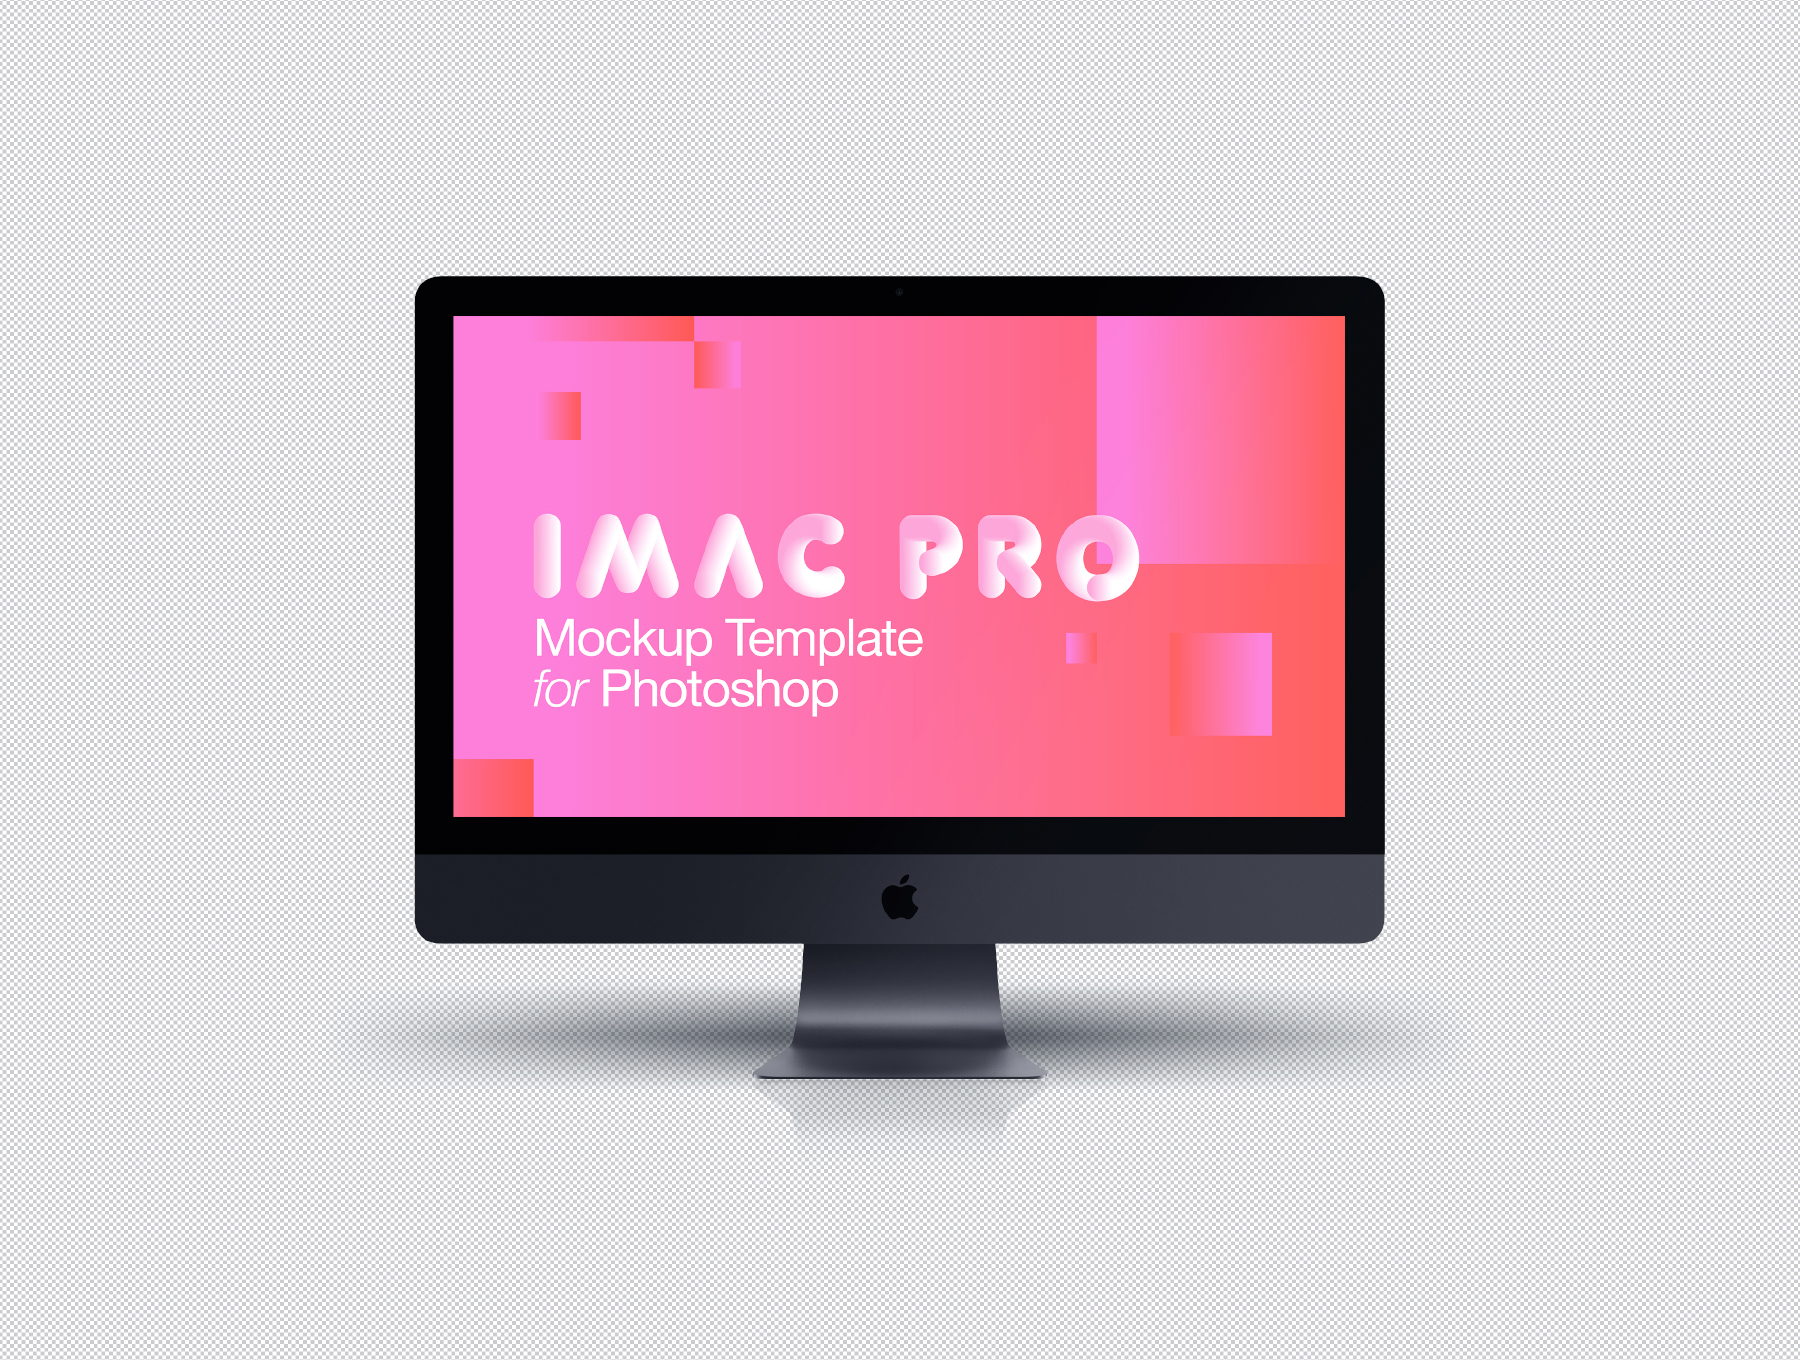 电脑样机iMac Pro 灰色版下载[PSD]设计素材模板